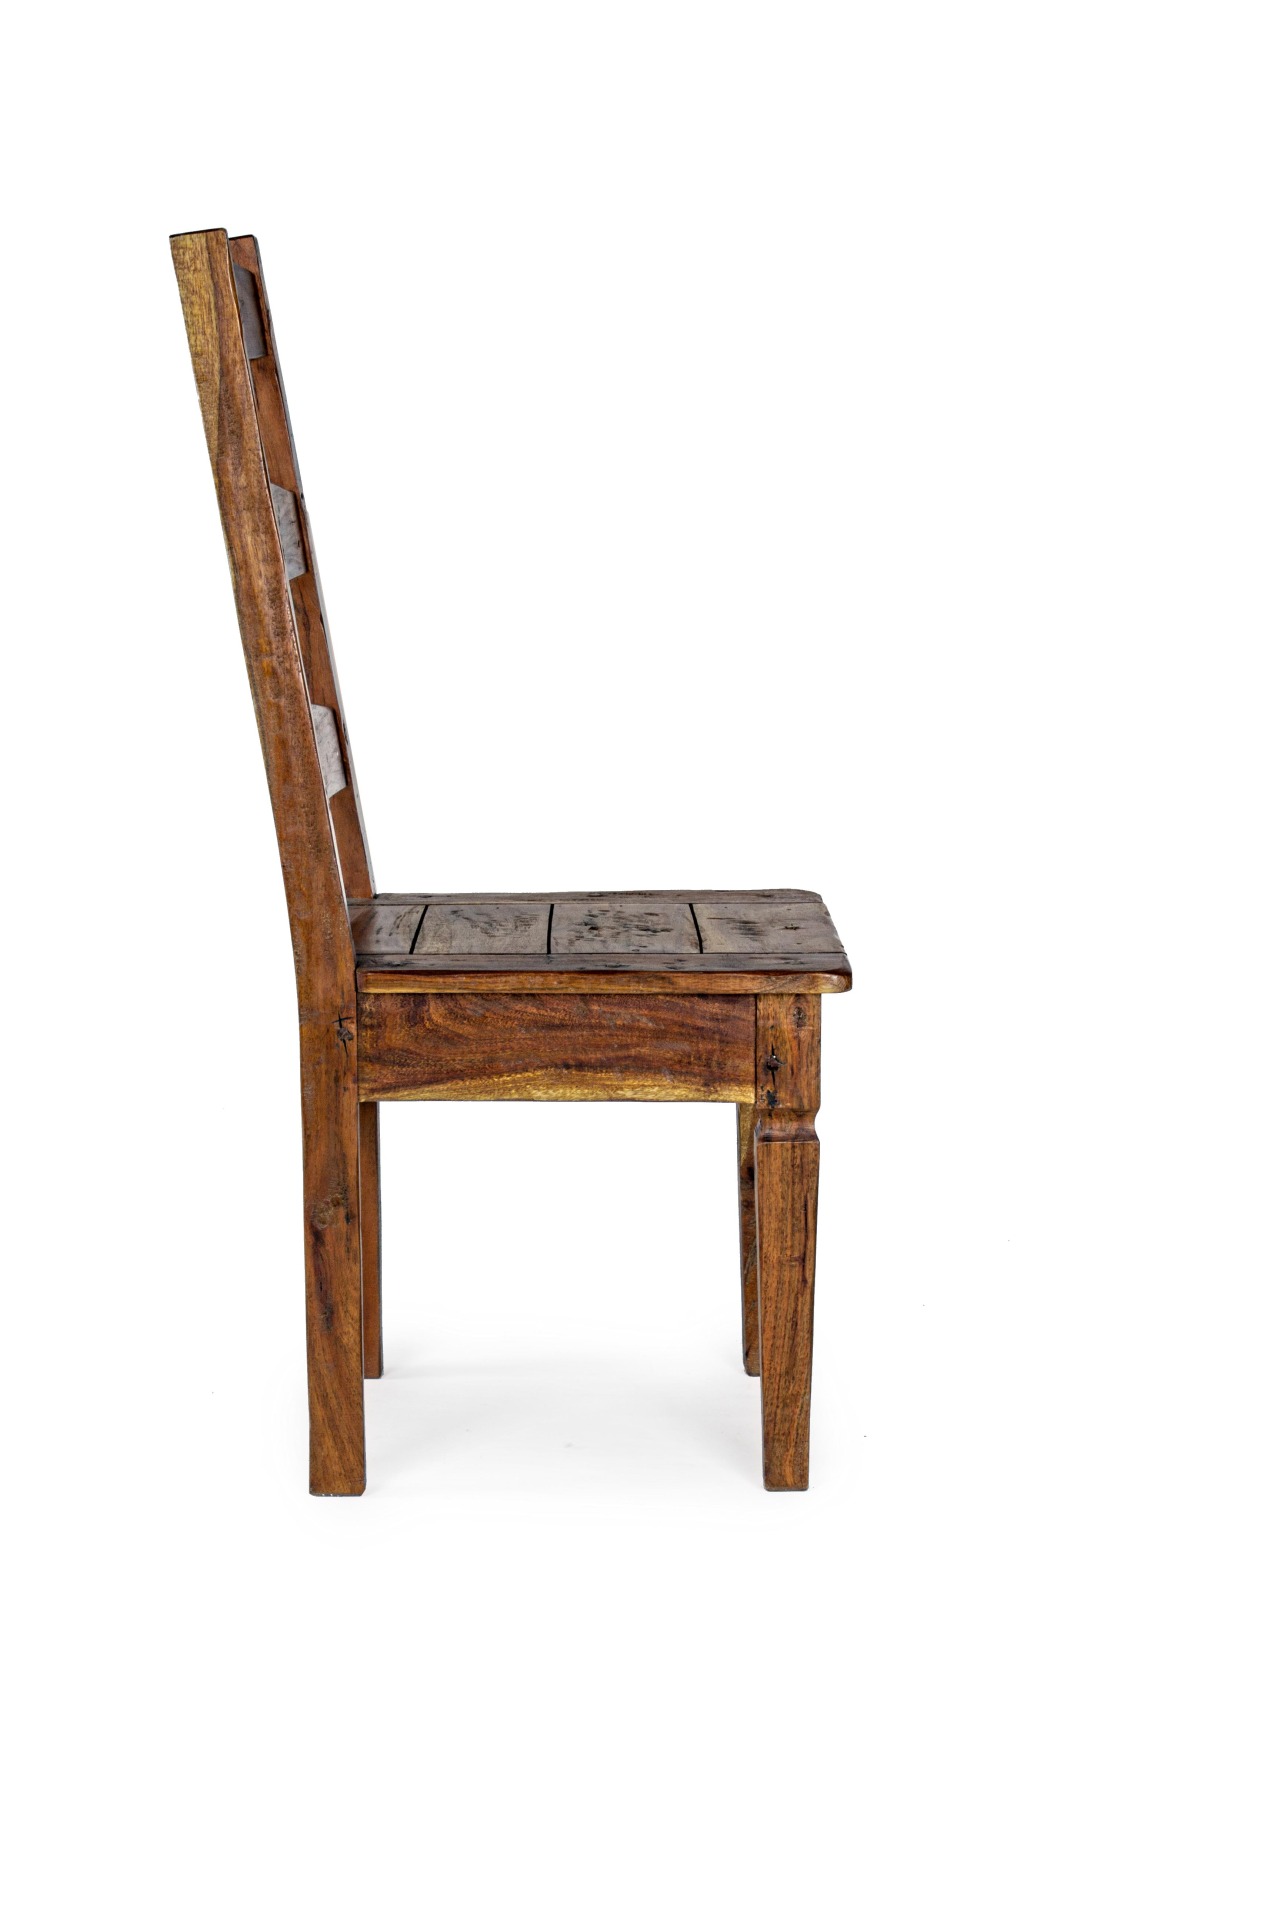 Der Stuhl Chateaux überzeugt mit seinem klassischen Design. Gefertigt wurde der Stuhl aus Akazienholz, welches einen natürlichen Farbton besitzt. Die Sitzhöhe beträgt 46 cm.